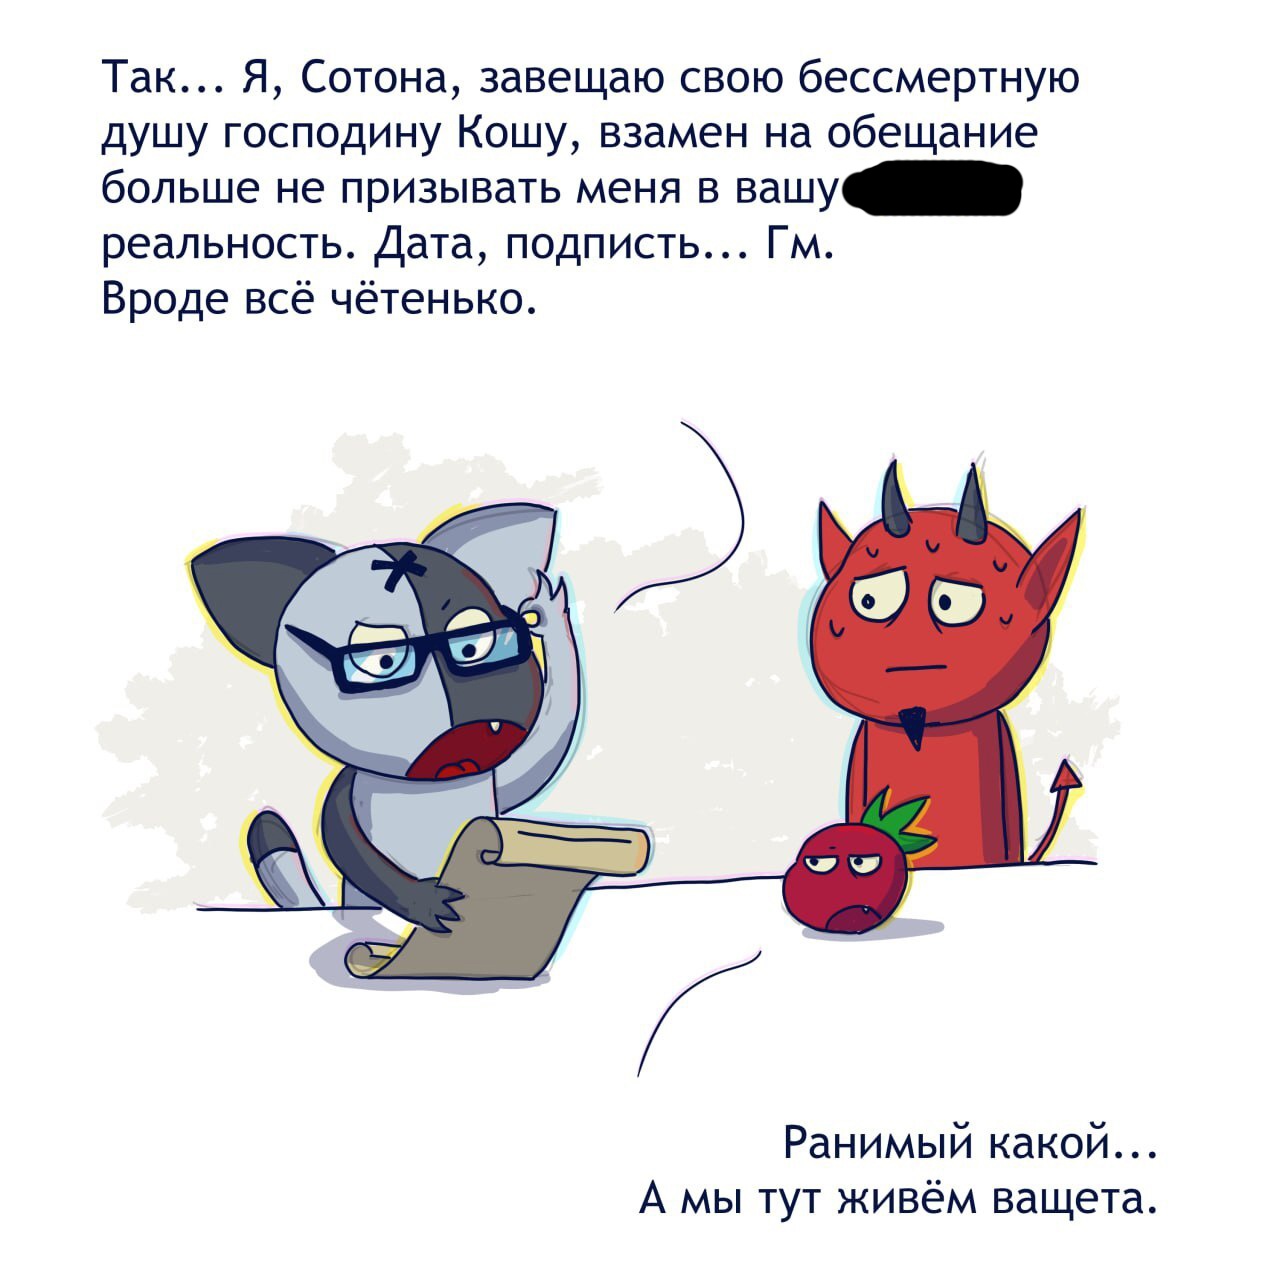 Коты-психопаты, анимешницы и БДСМ имени Сталина: какими были первые веб-комиксы на русском языке? Часть 2 - 14